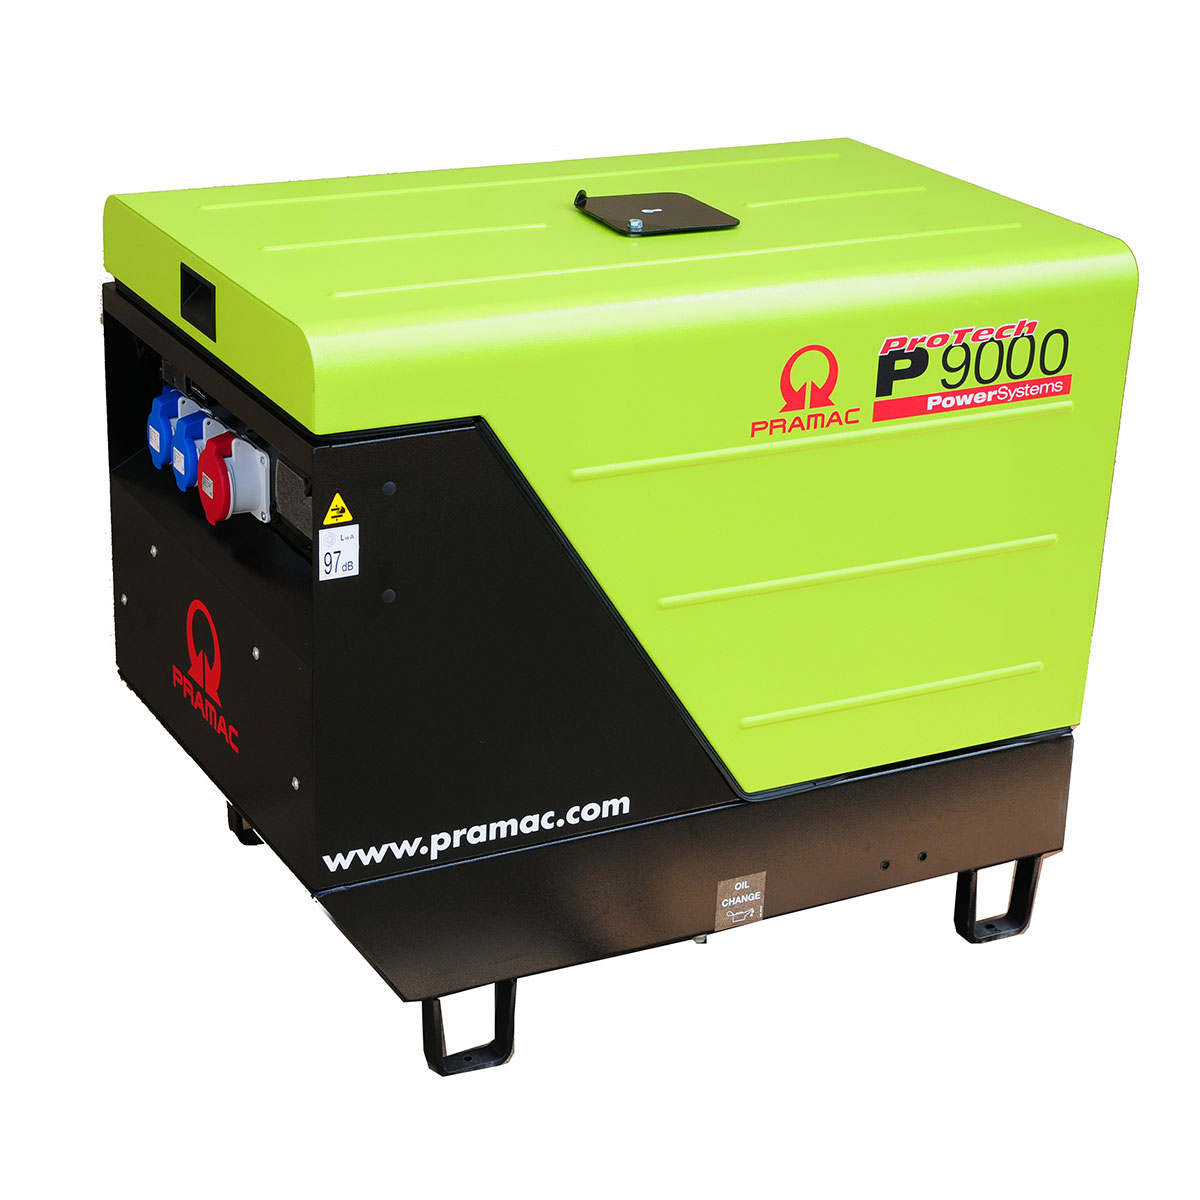 Pramac-P9000-Silent-Diesel-Generator-3-Phase